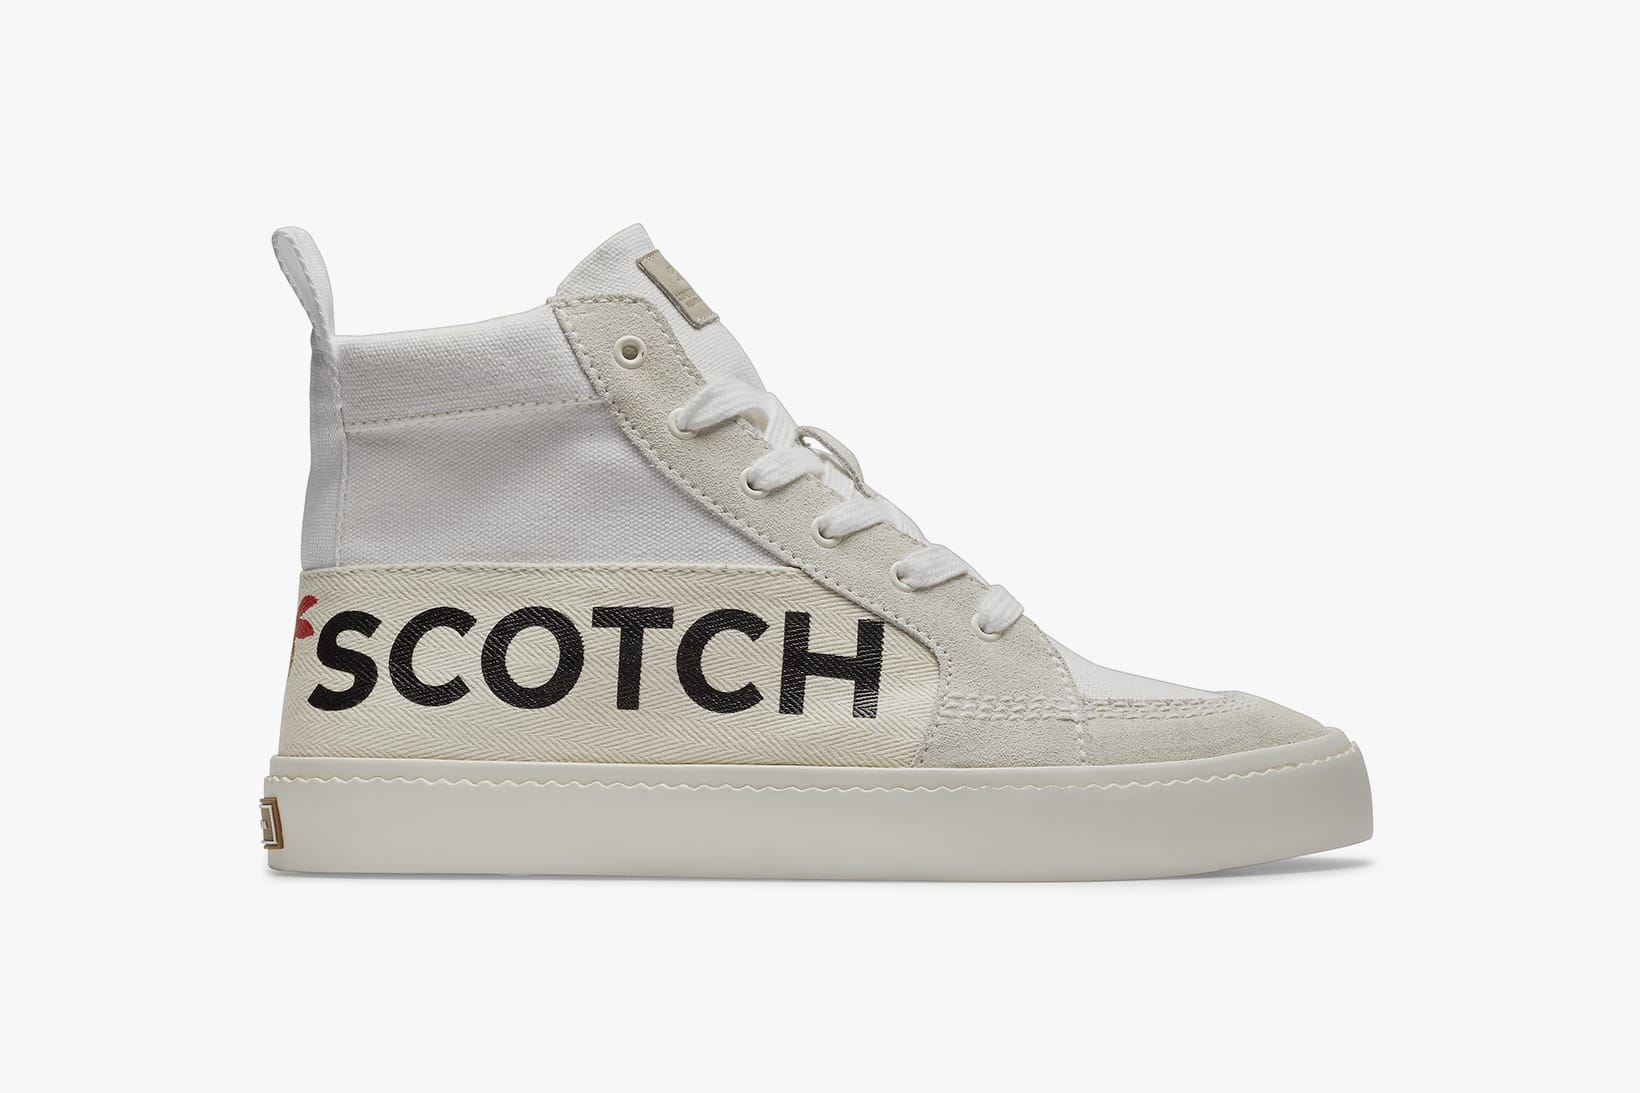 Scotch \u0026 Soda SS19 Footwear Collection 